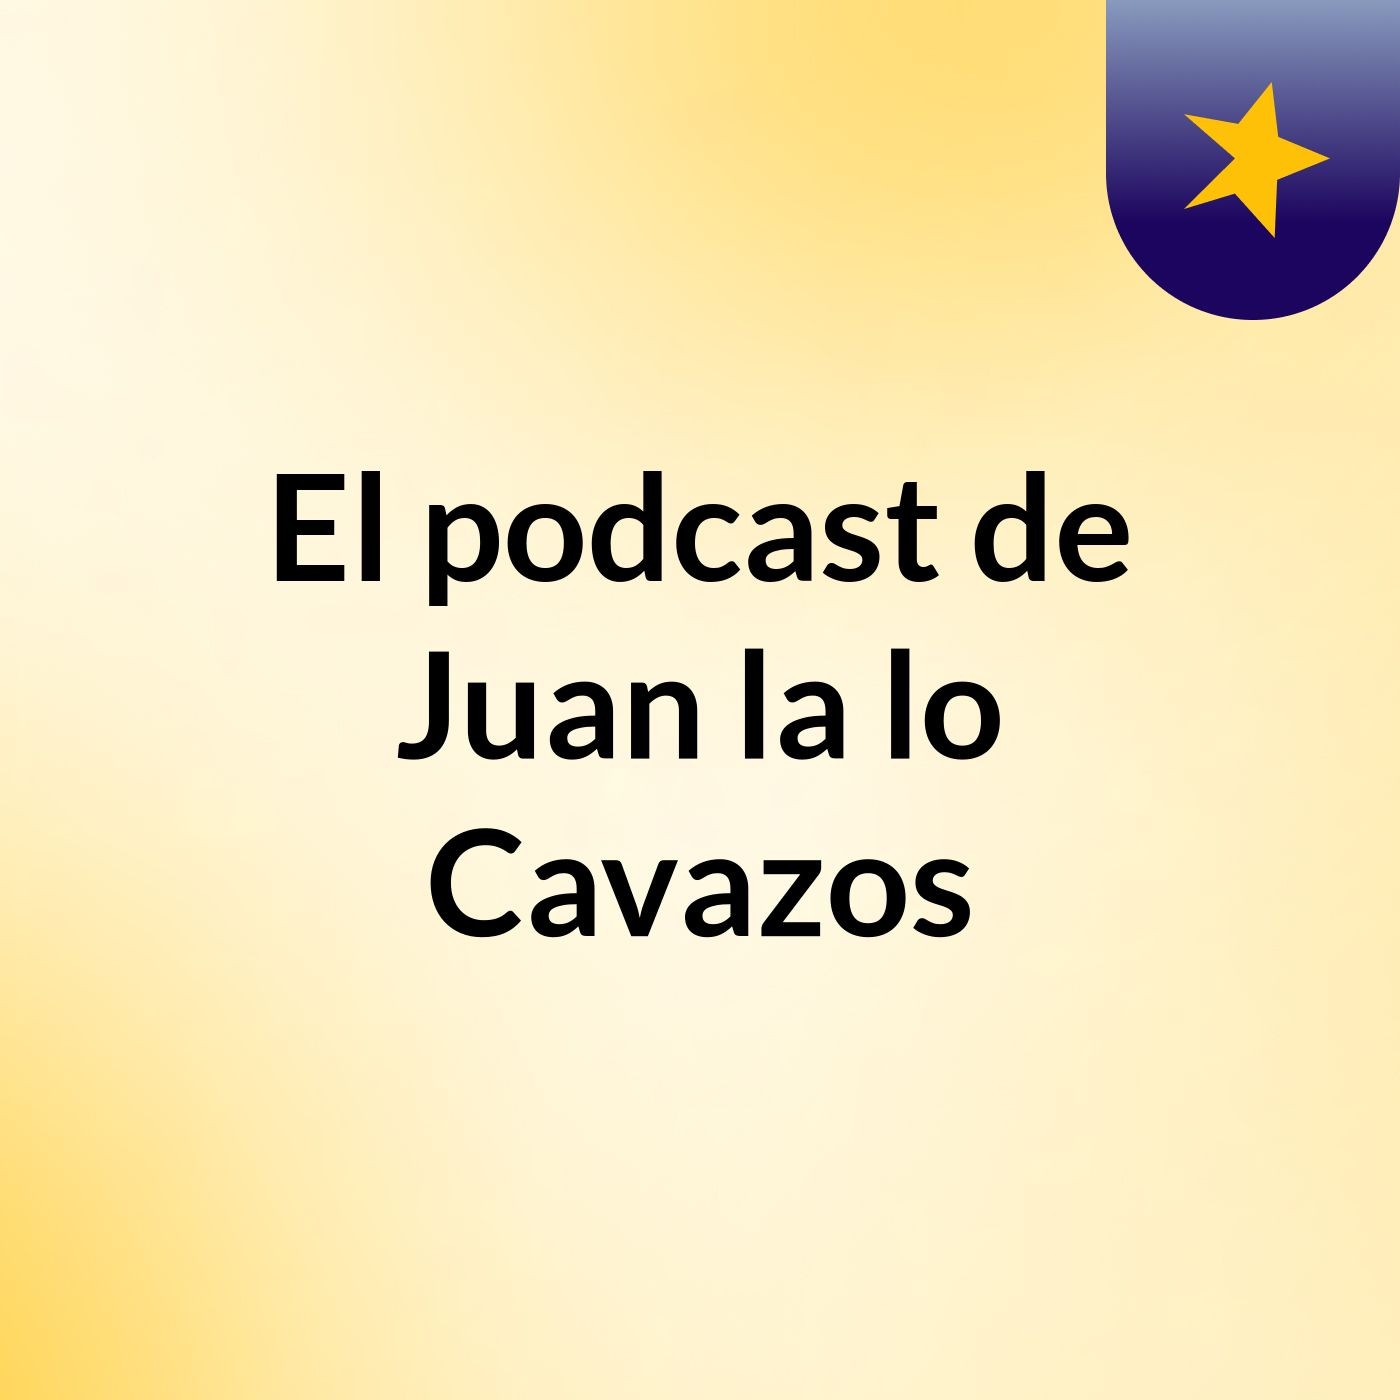 El podcast de Juan la lo Cavazos